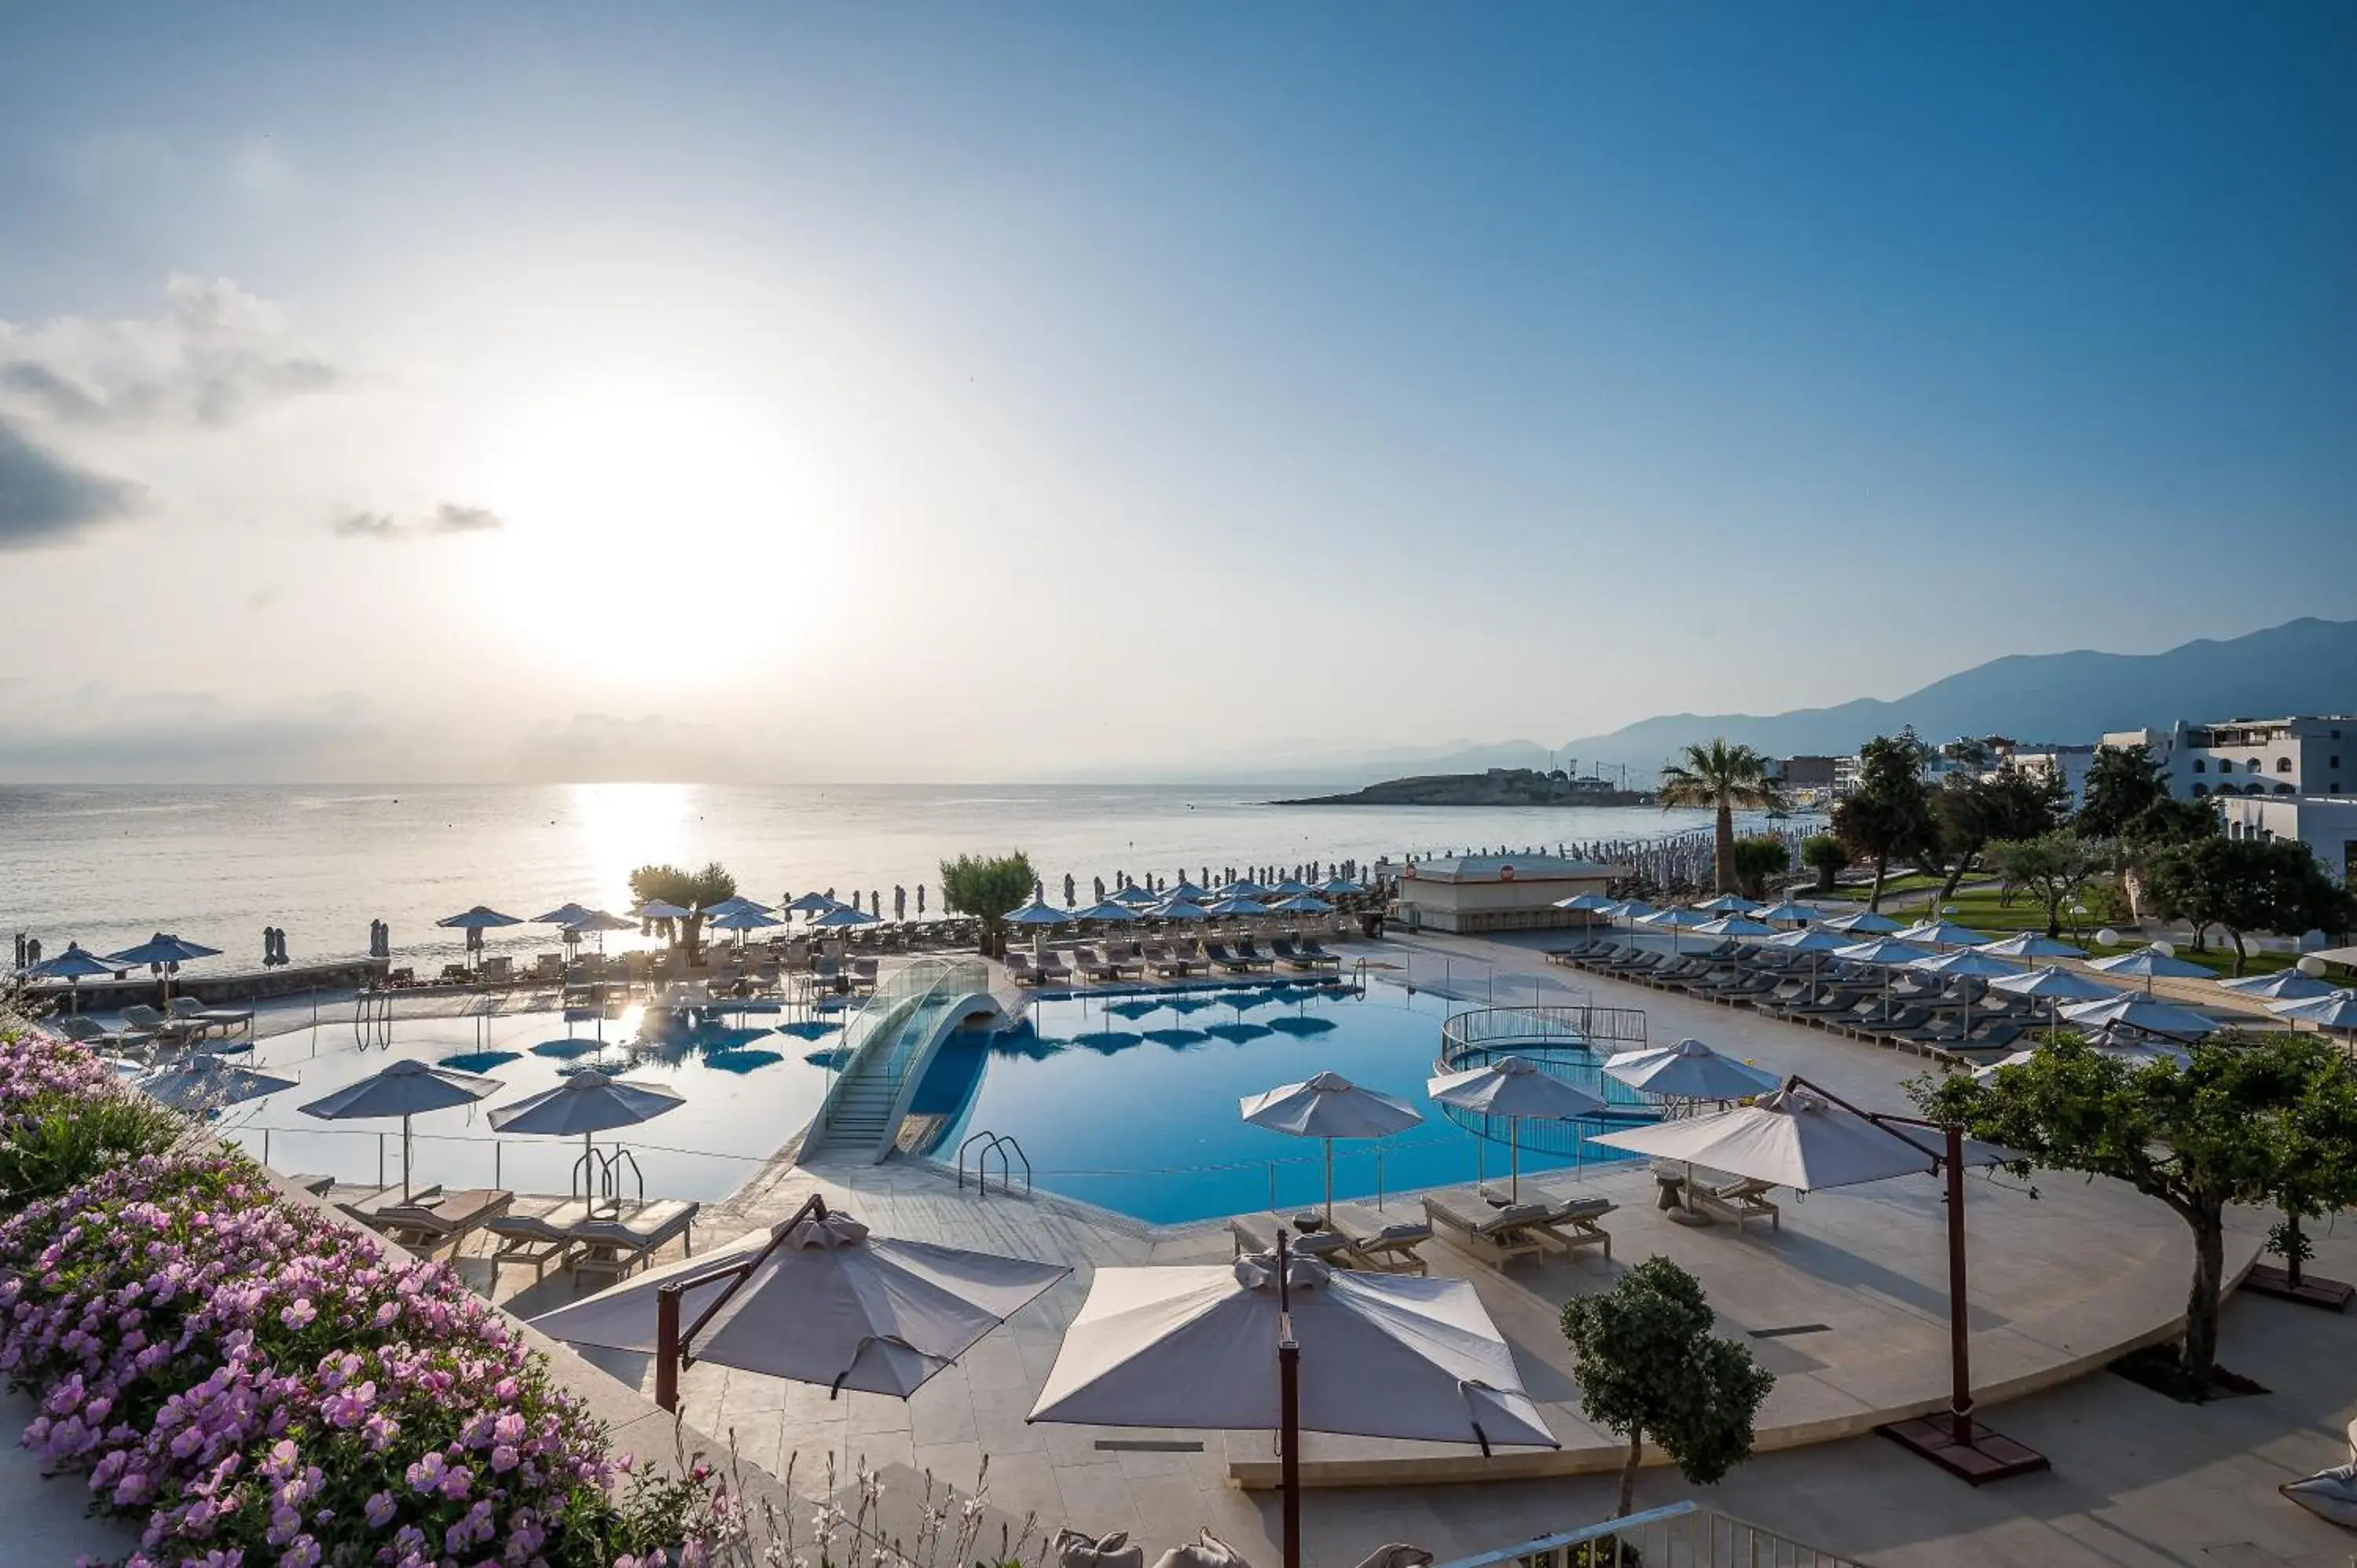 Swimming pool, Pool View in Creta Maris Resort